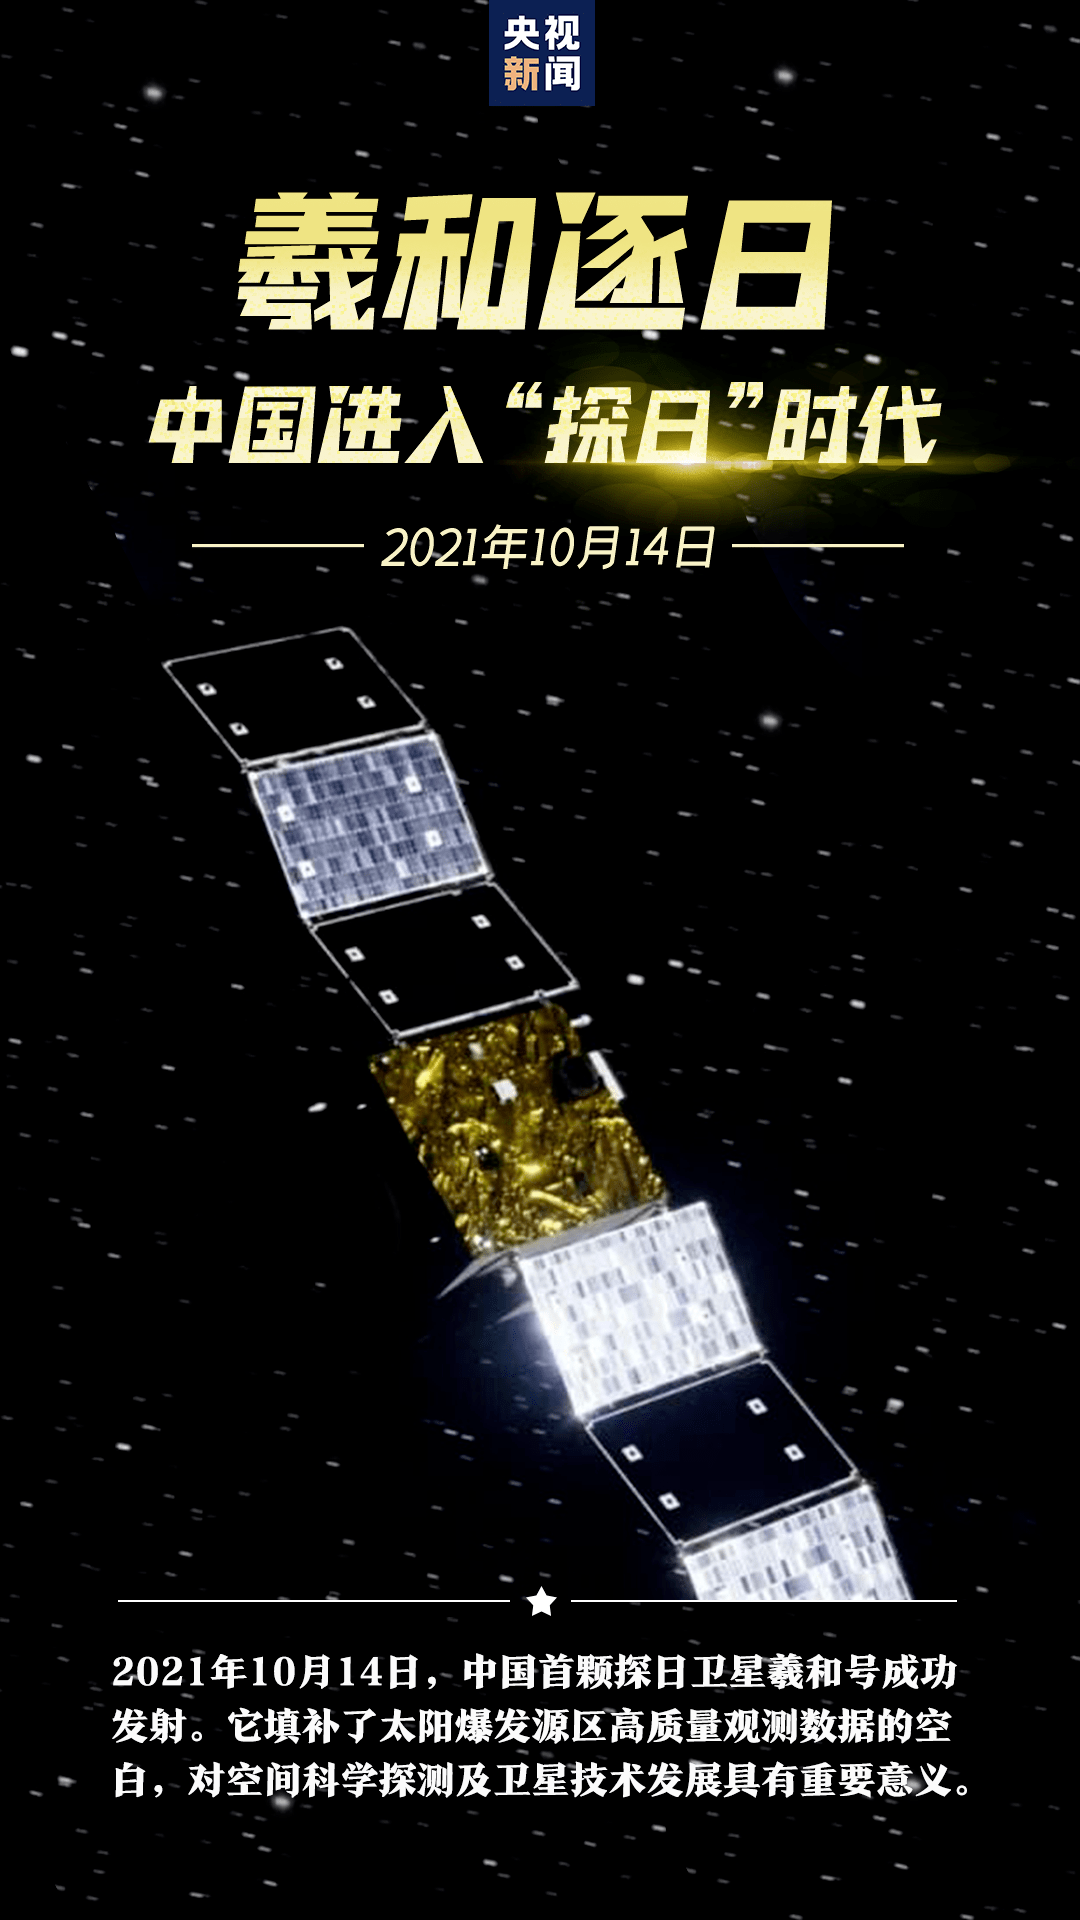 中国航天日mpe与一代航天人逐梦同行